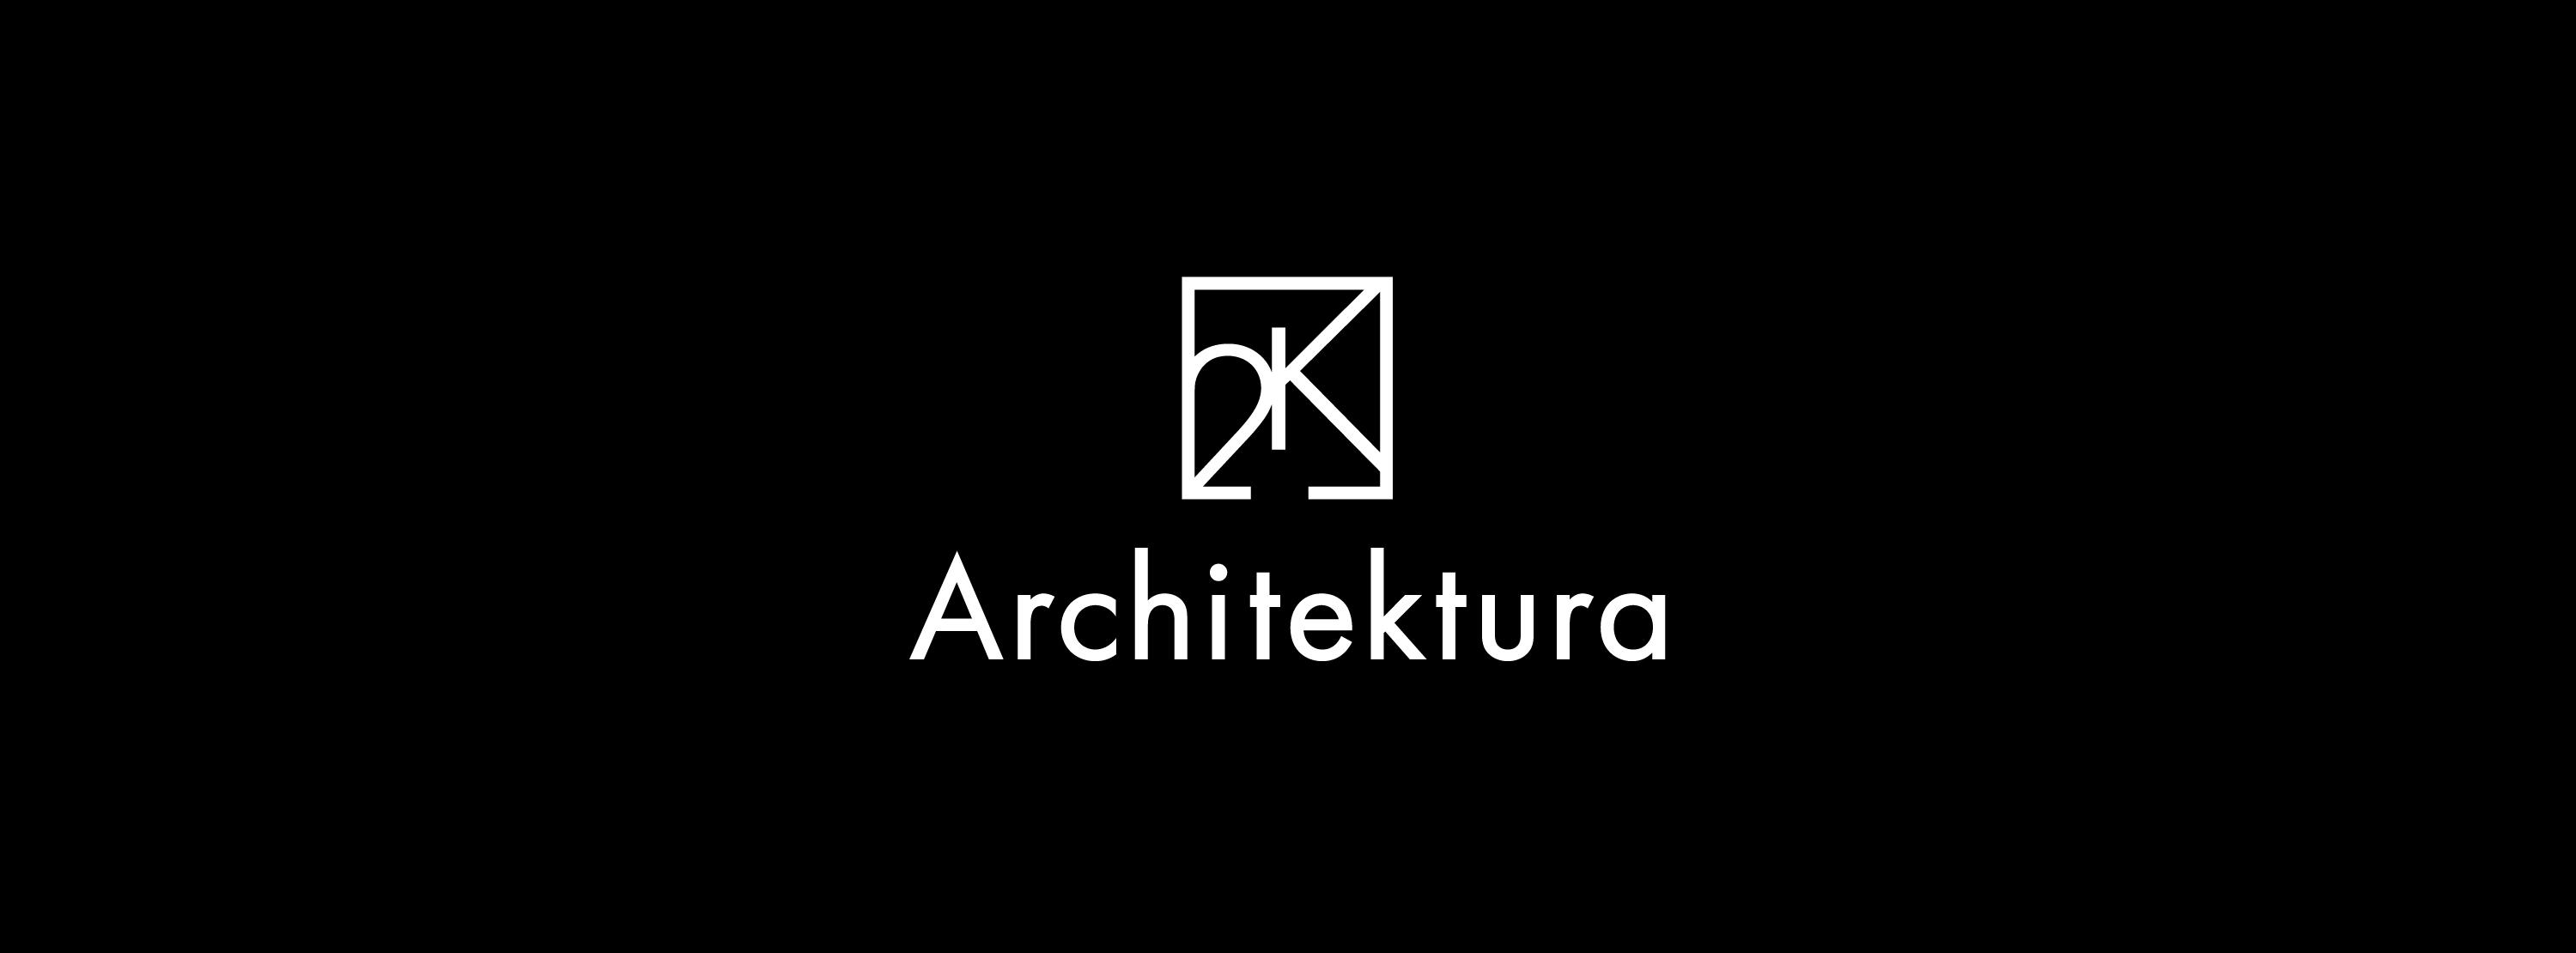 2k architektura 